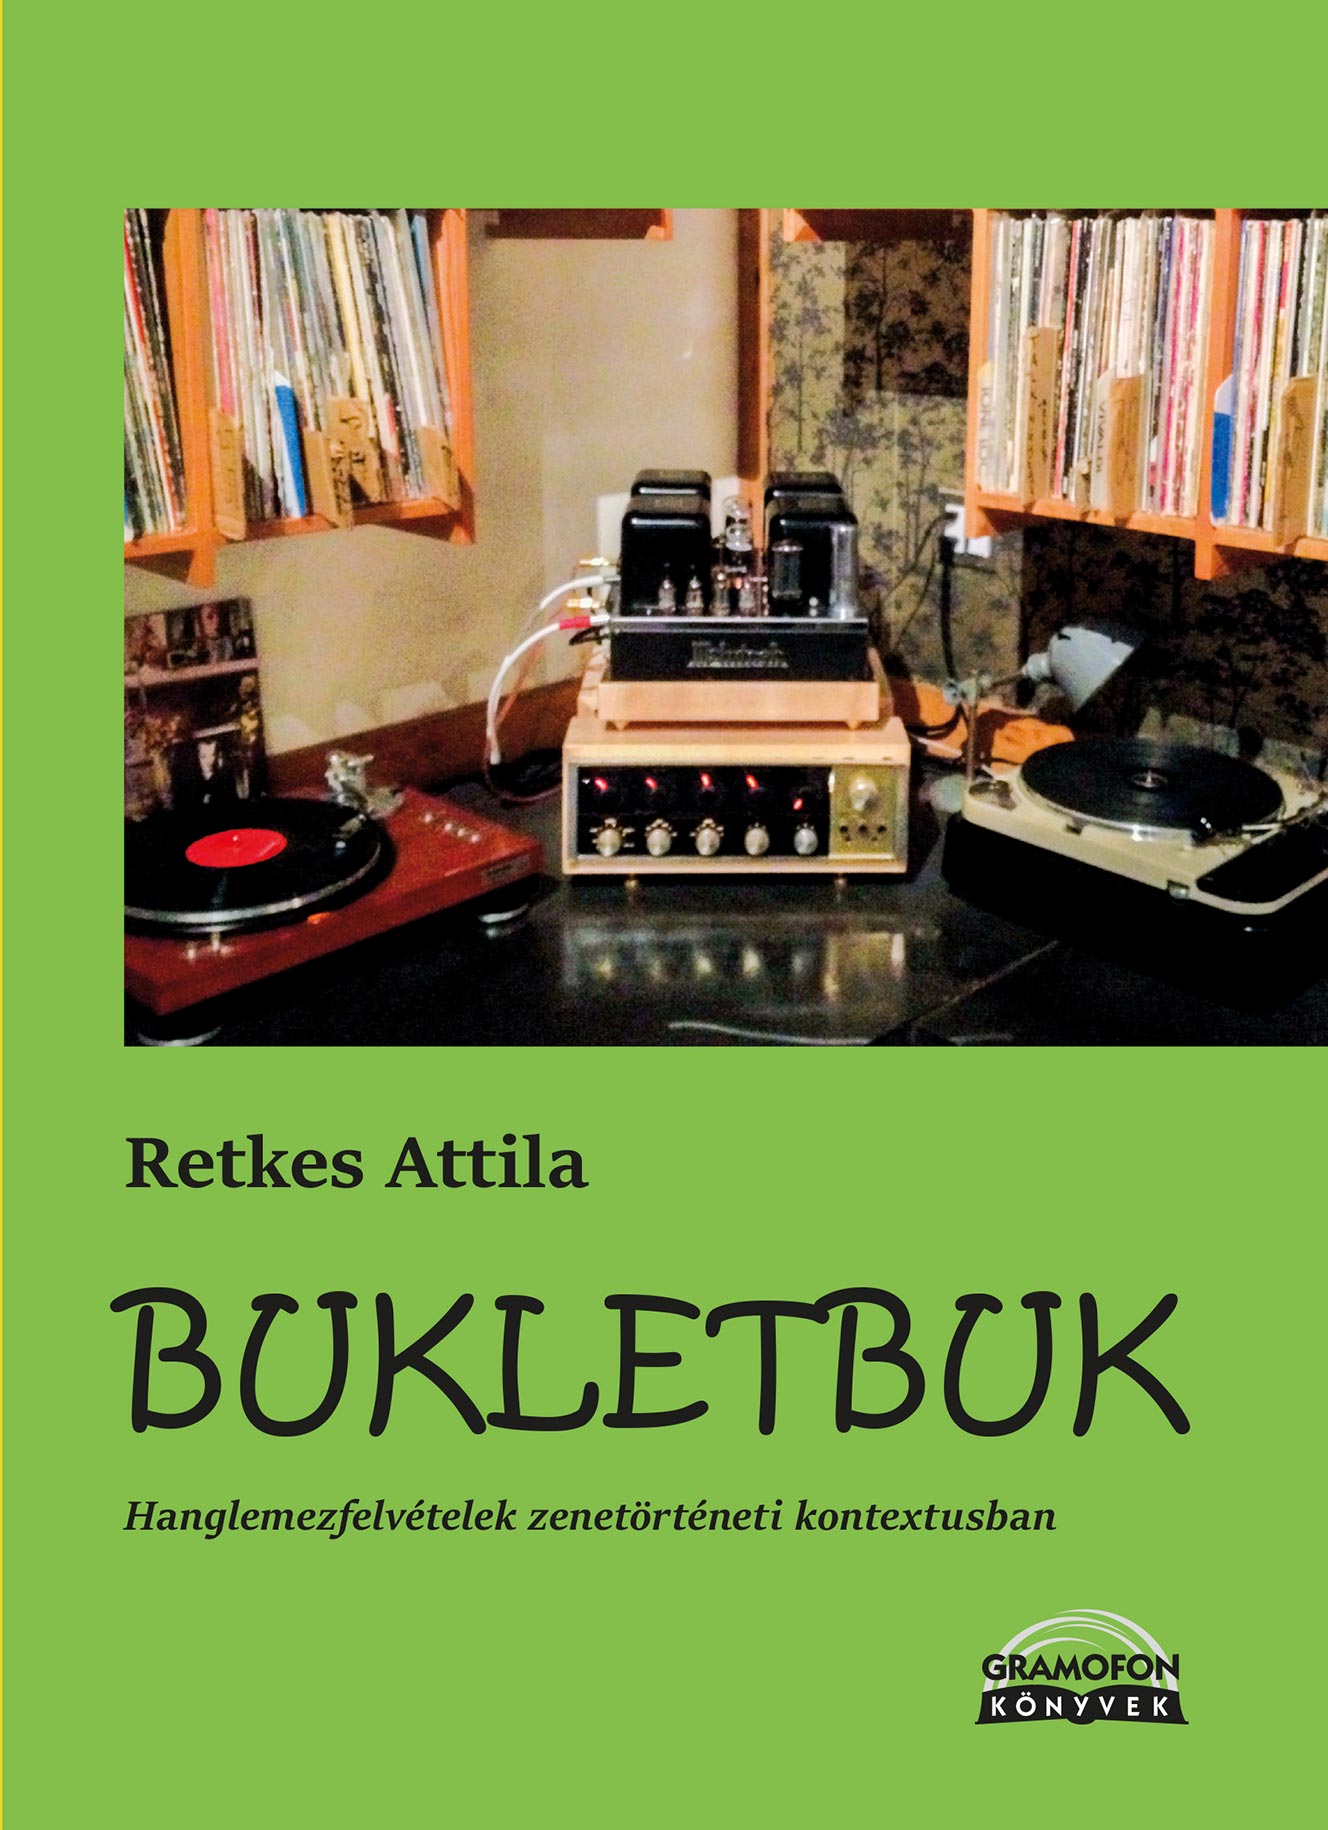 Retkes Attila: Bukletbuk